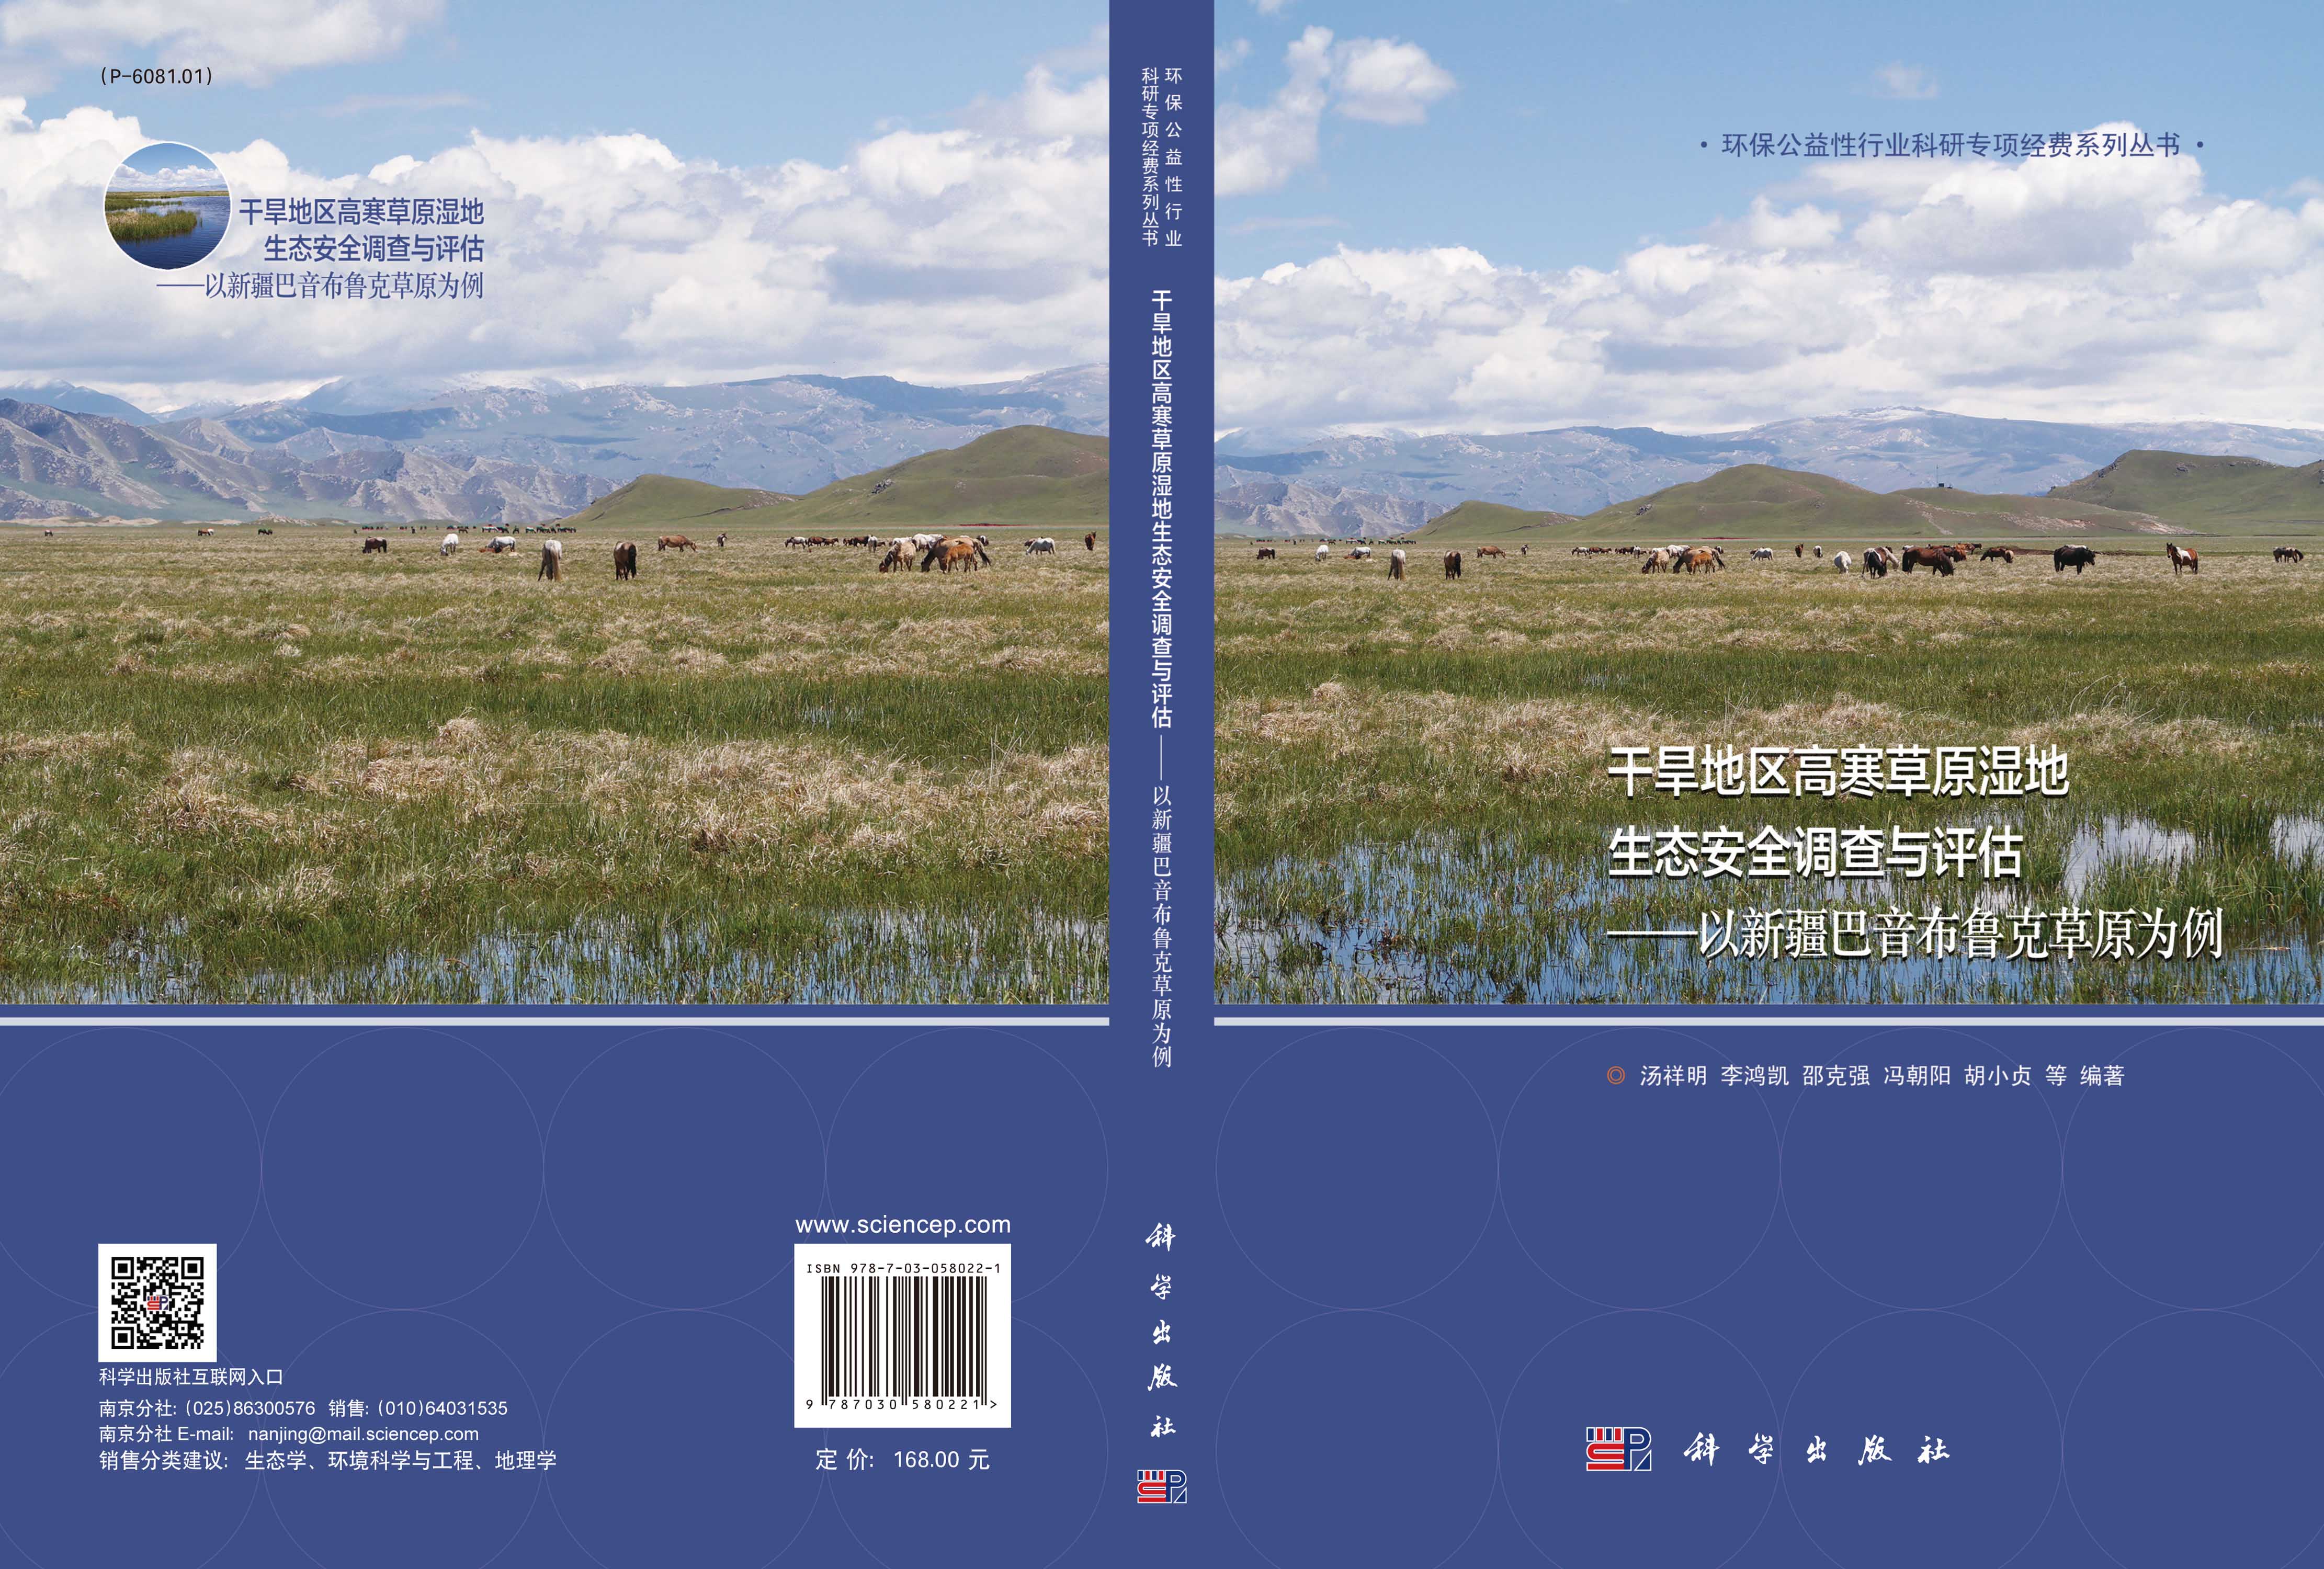 干旱地区高寒草原湿地生态安全调查与评估——以新疆巴音布鲁克草原为例